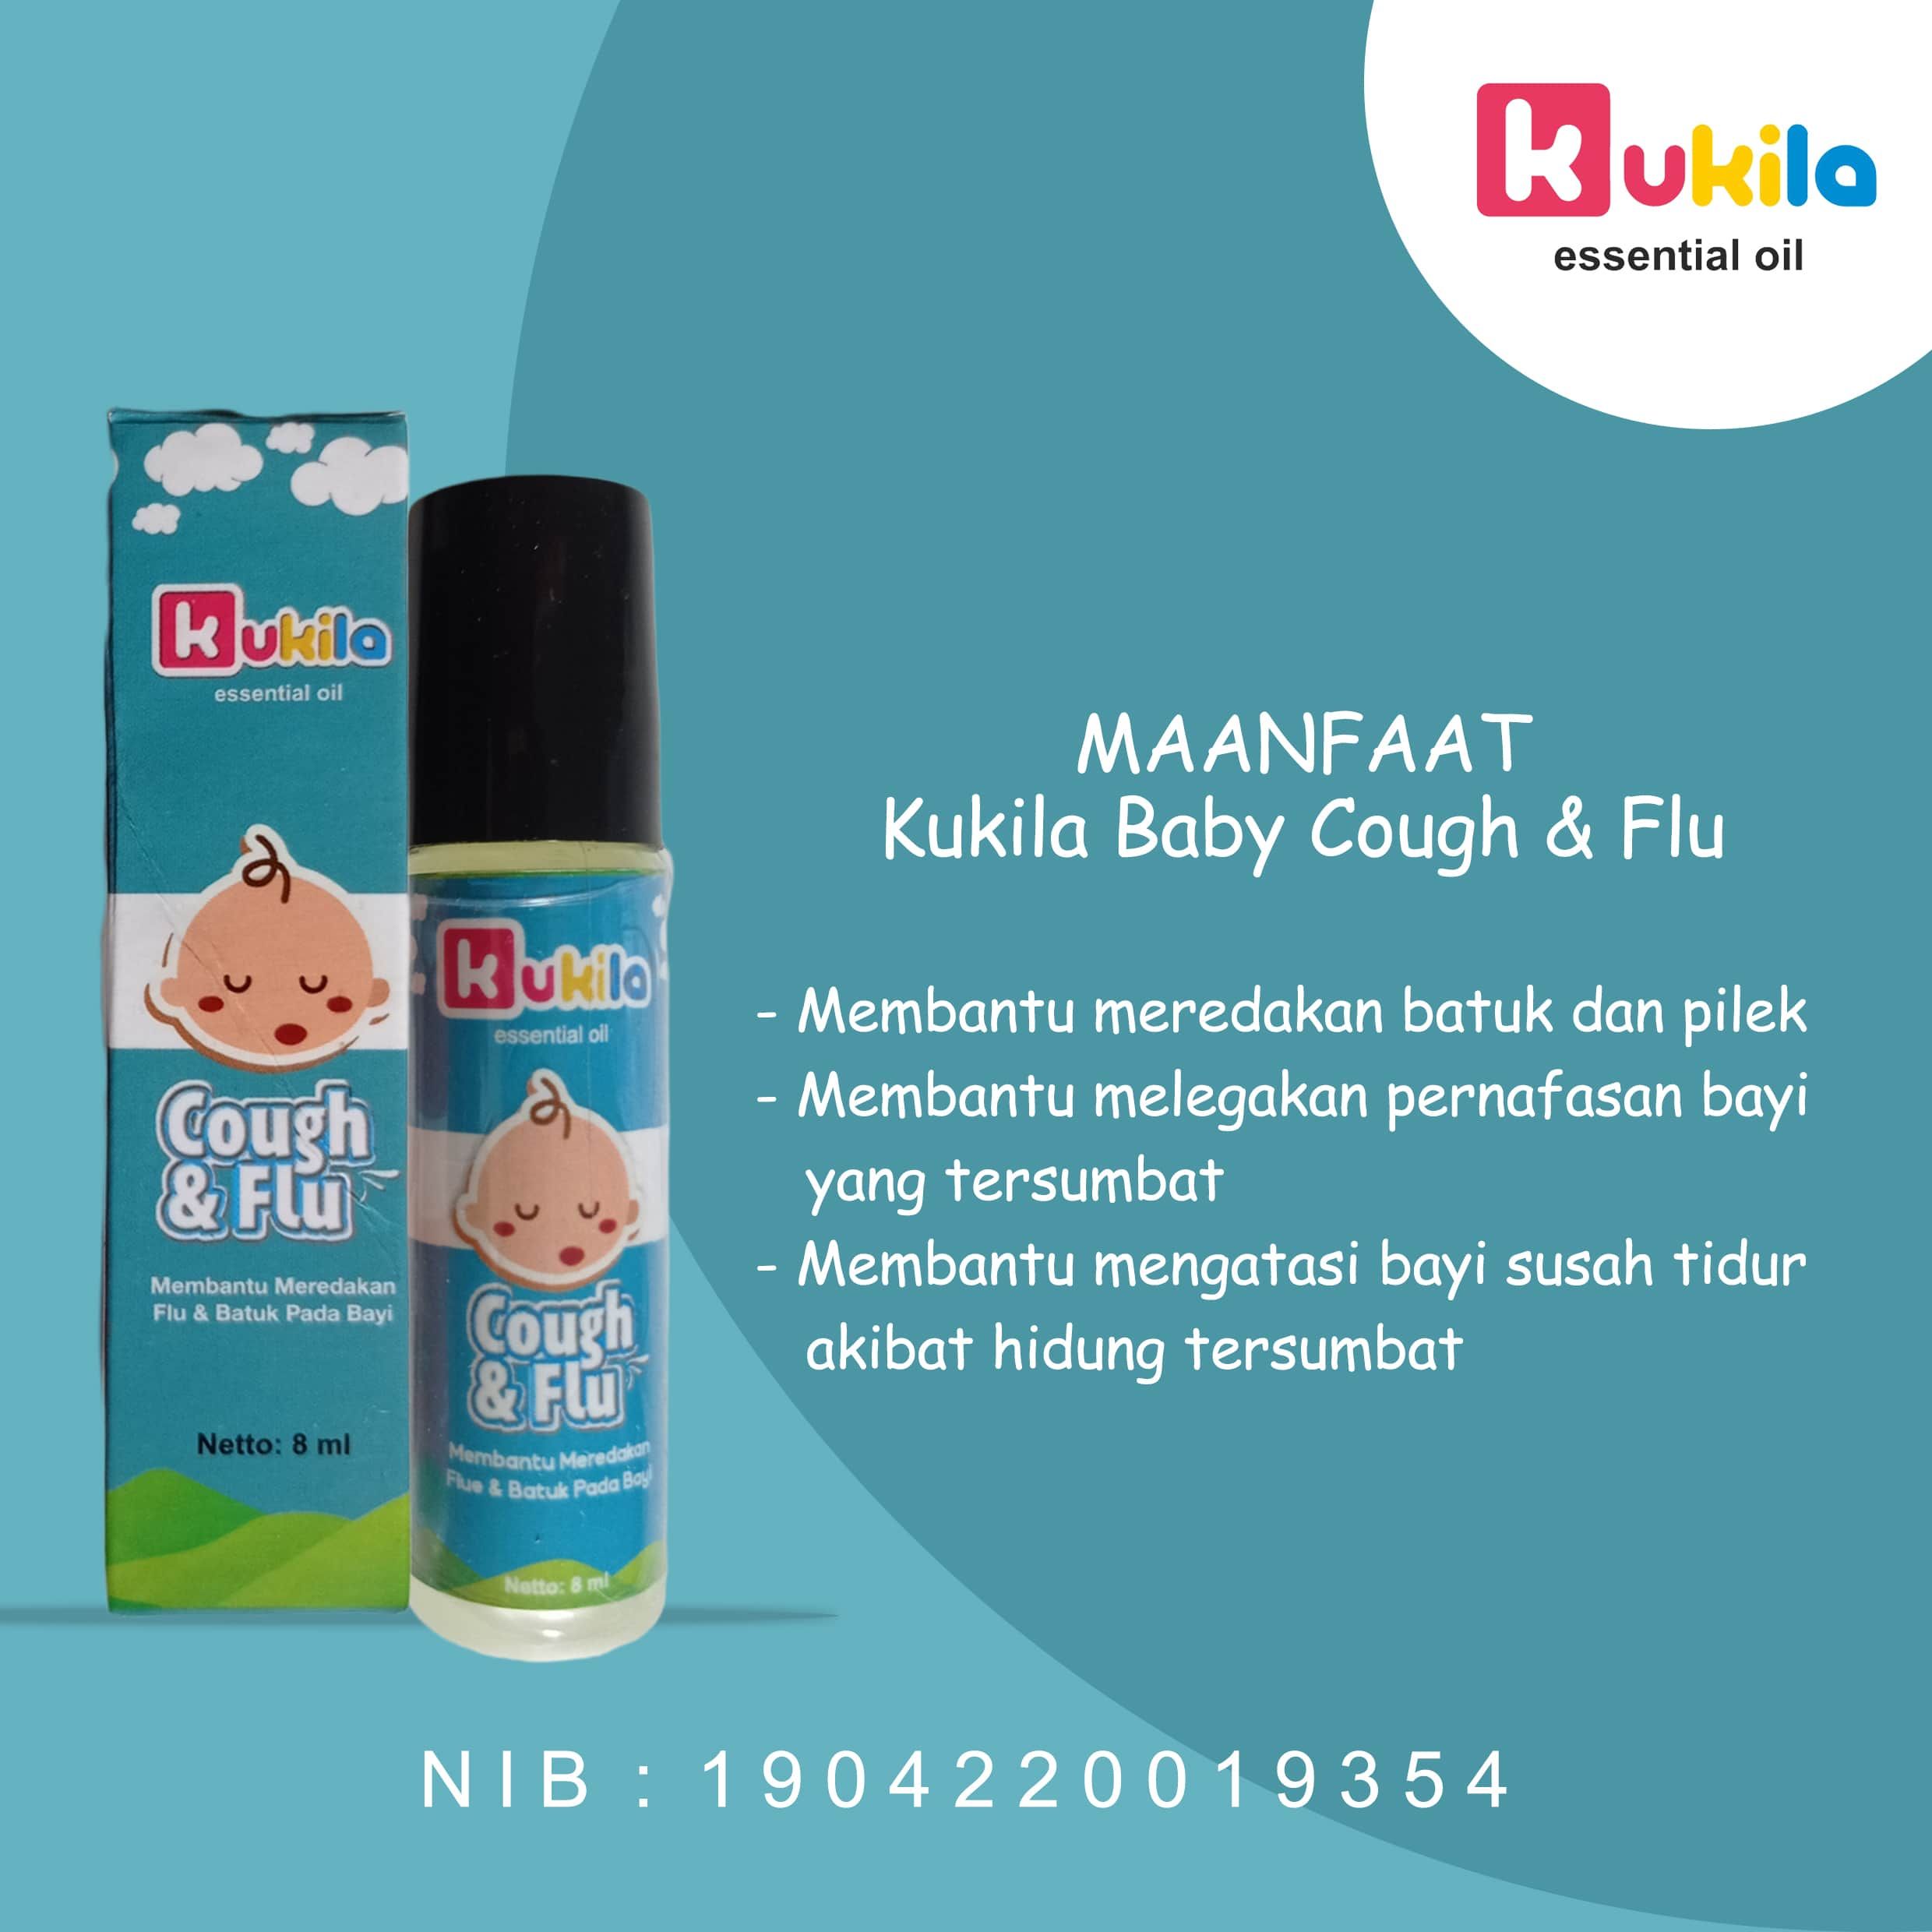 Kukila Essential Oil Baby Fever Drop 1 pcs dan Cough & Flu 5 pcs - 2